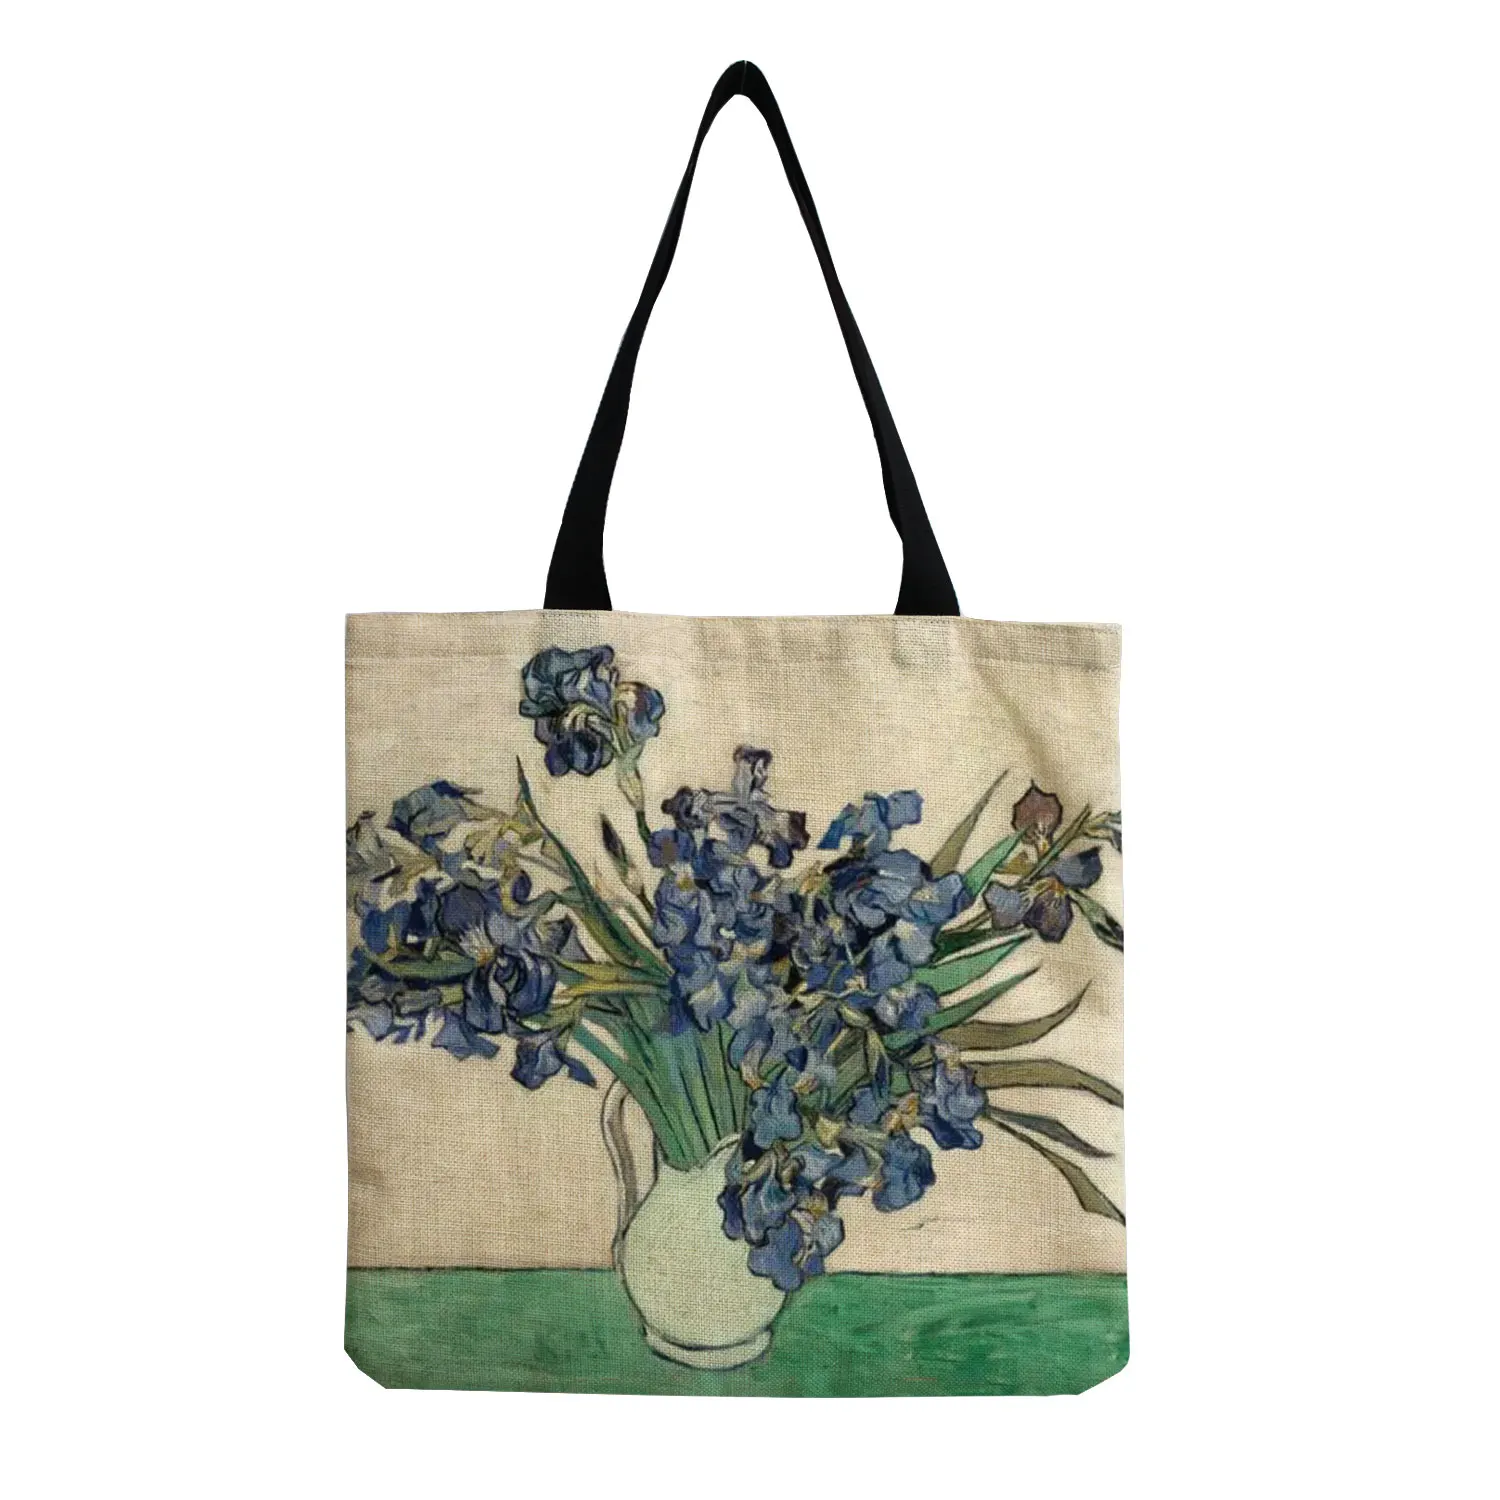 New Van Gogh Oil Painting Retro Tote Bag Retro Art Fashion Travel Bag Women Leisure Eco Shopping High Quality Foldable Handbag 